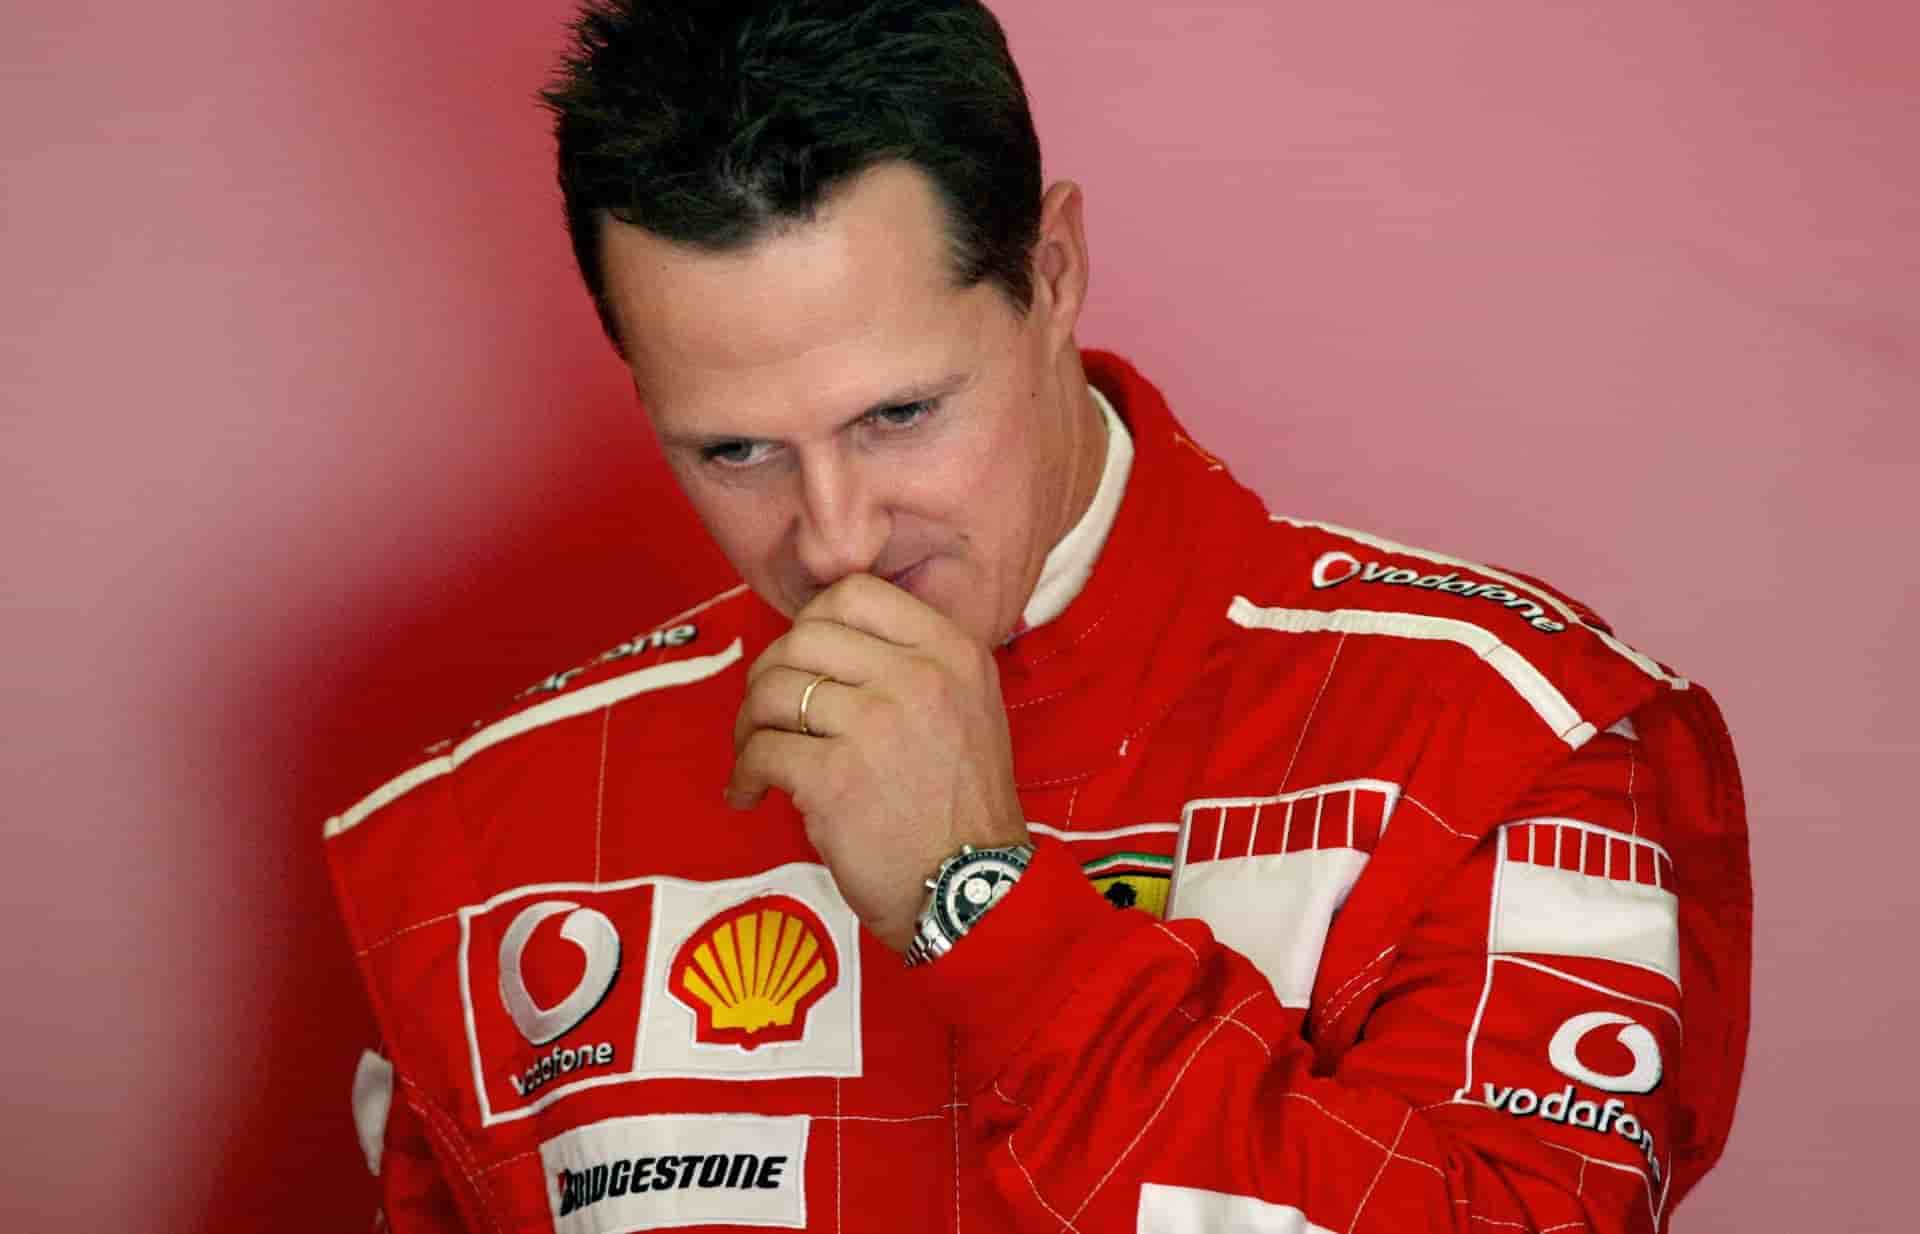 Michael Schumacher, la moglie: "State tranquilli è in buone mani"